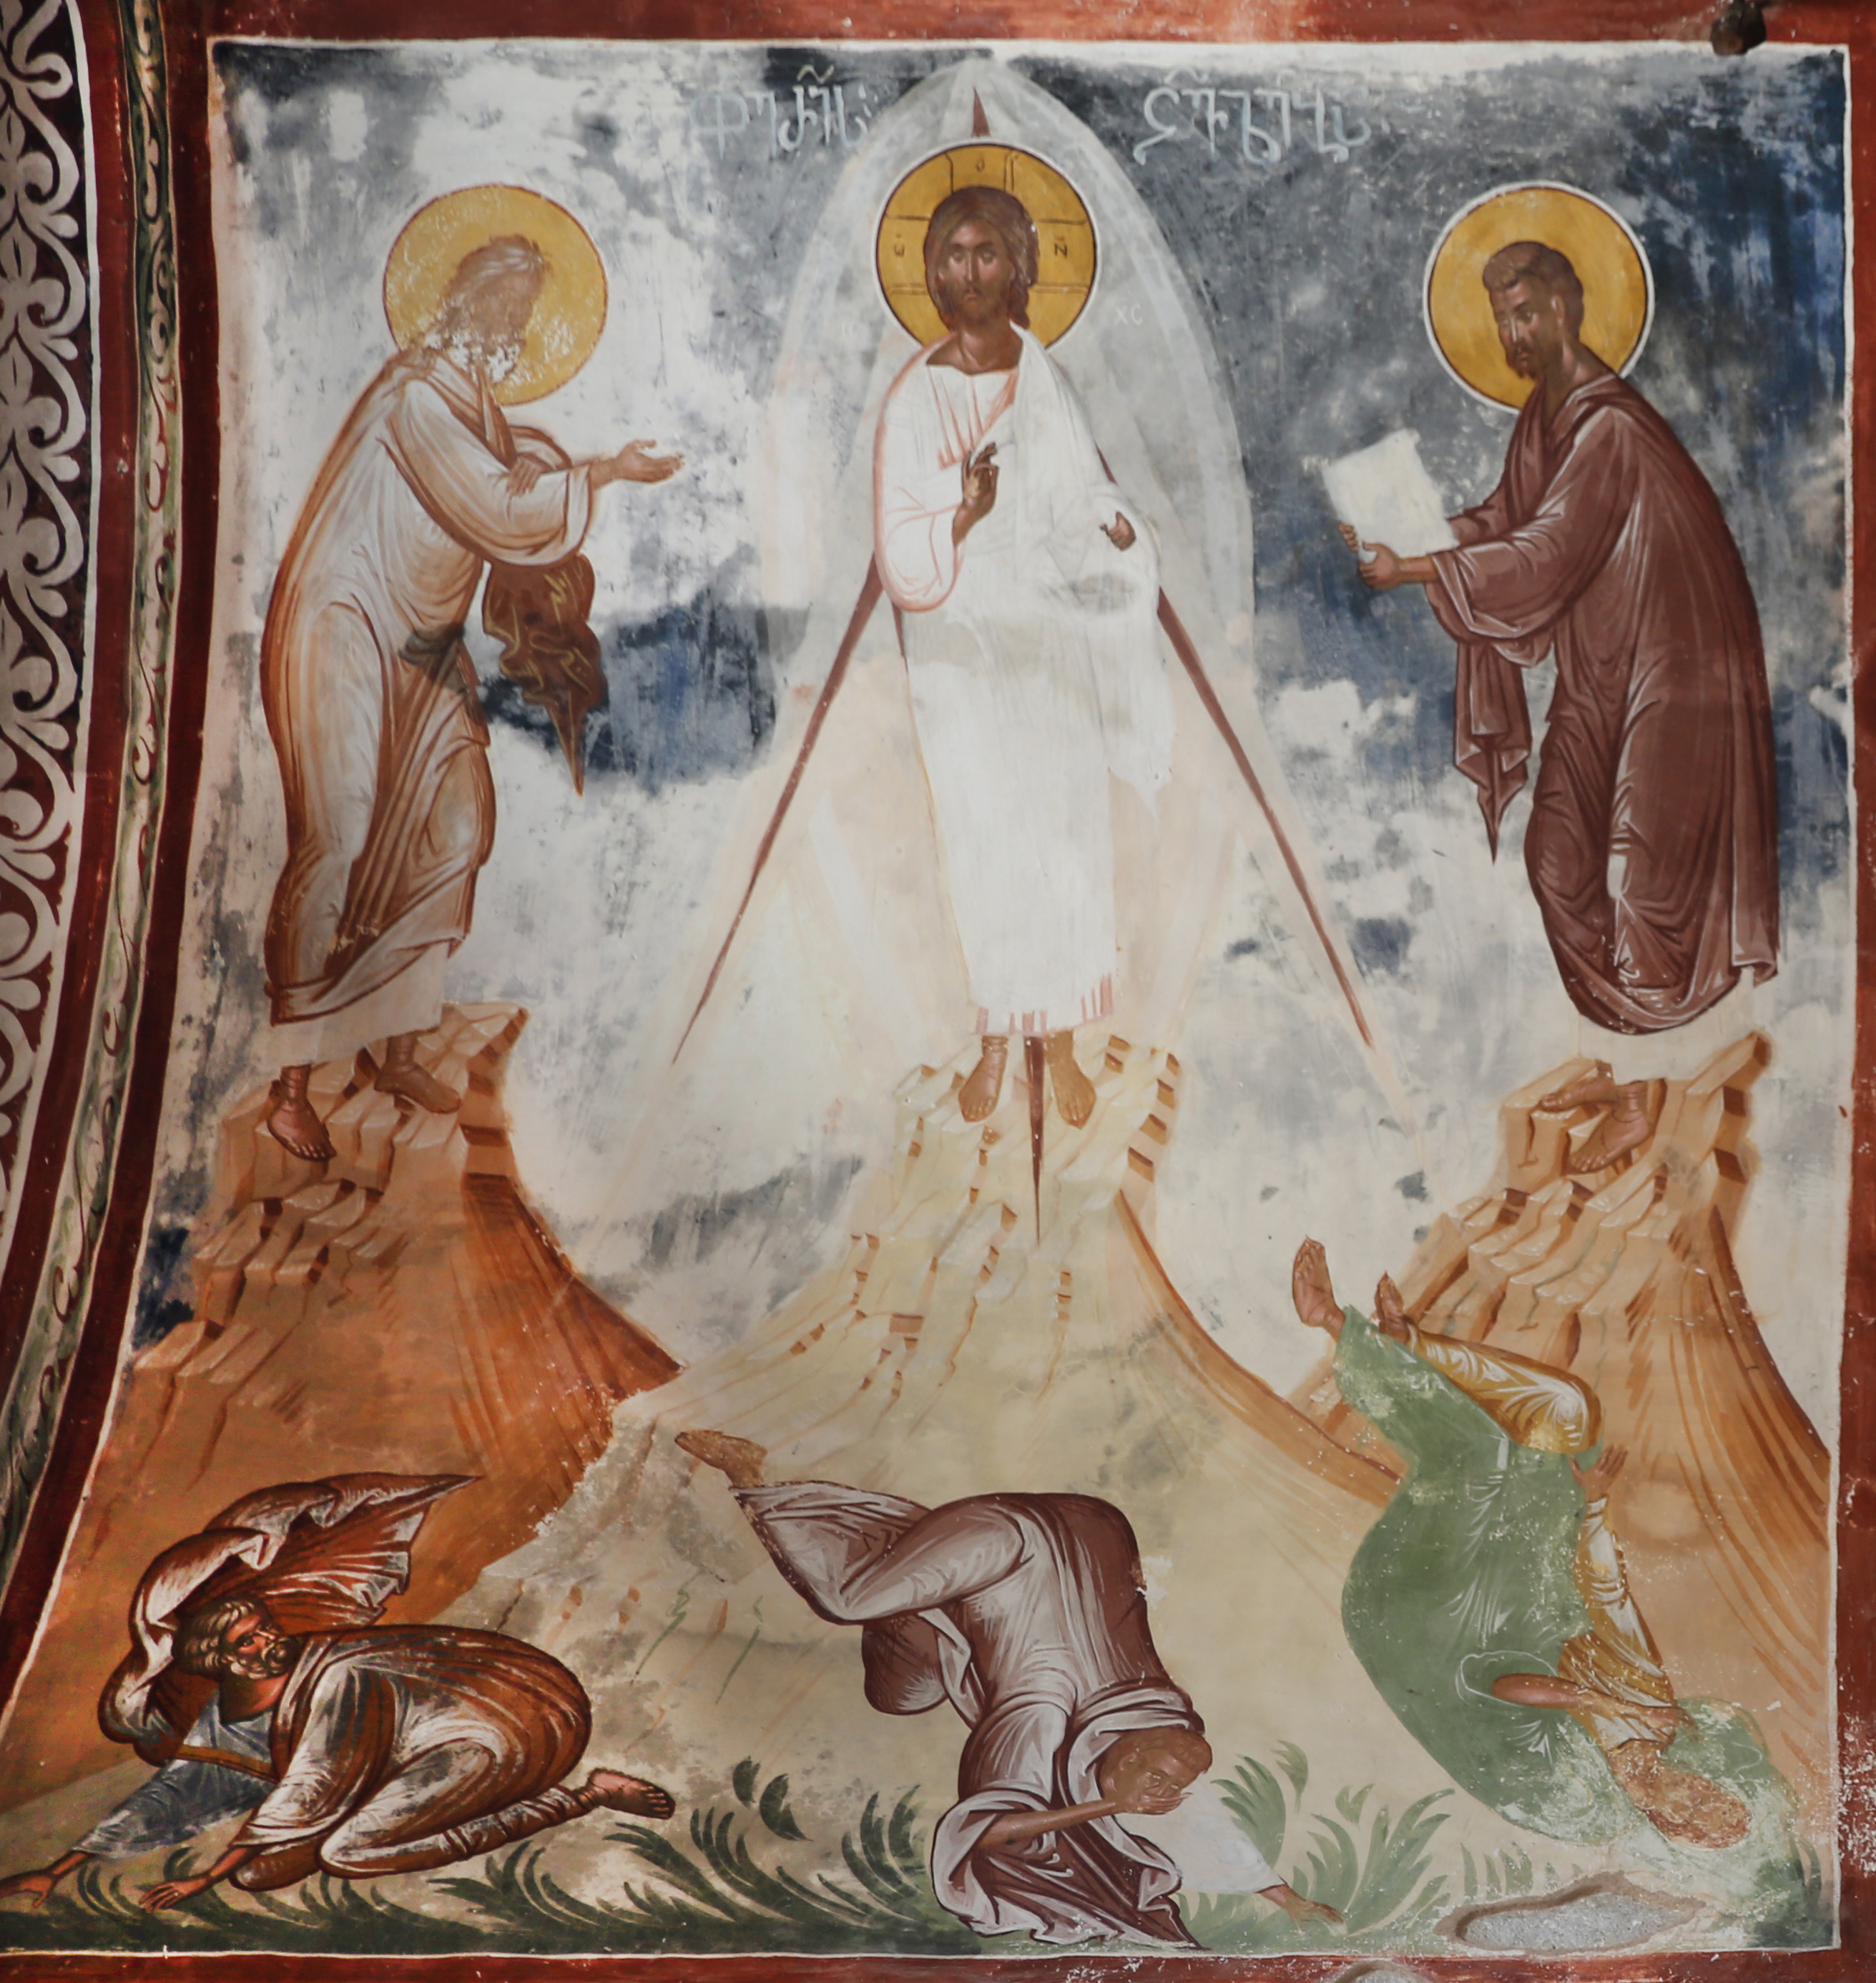 Verklärung. Fresko in der Georgskirche von Gelati, Georgien. 1. Hälfte 16. Jh.